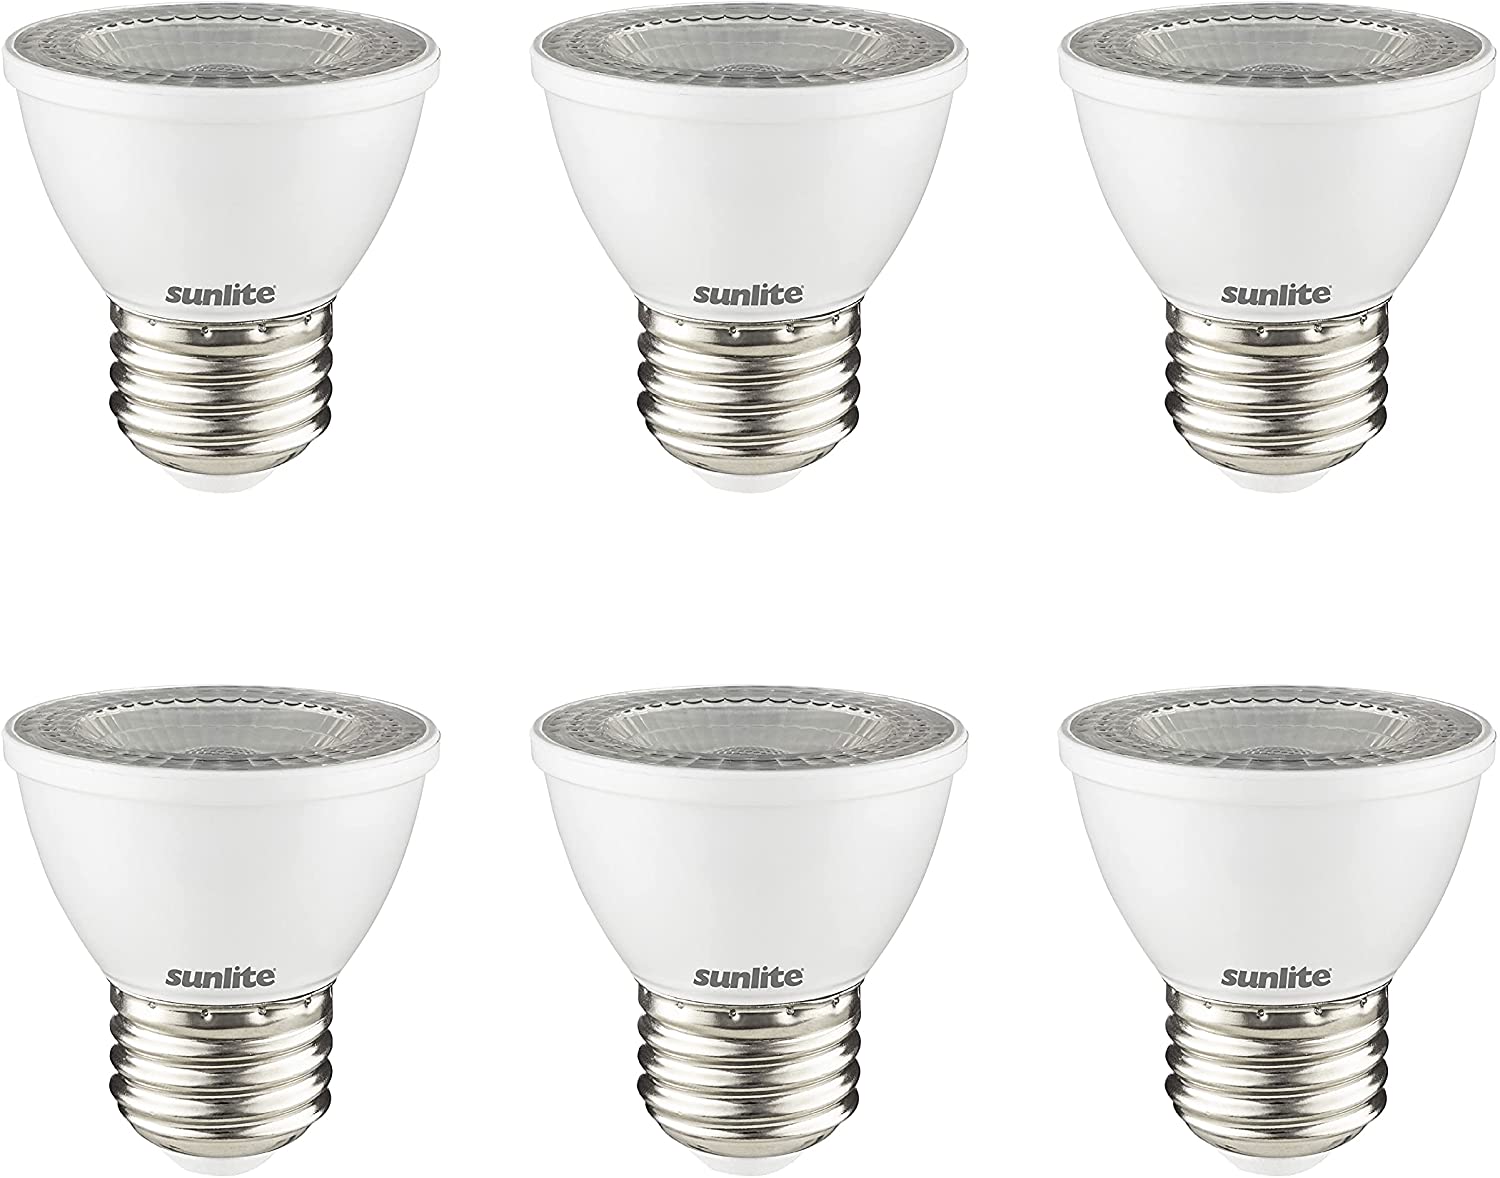 Sunlite 60-Watt Mr16 Warm White E26 Dimmable Spotlight Light Bulb (6-Pack) in the Spot Flood LED Light Bulbs at Lowes.com